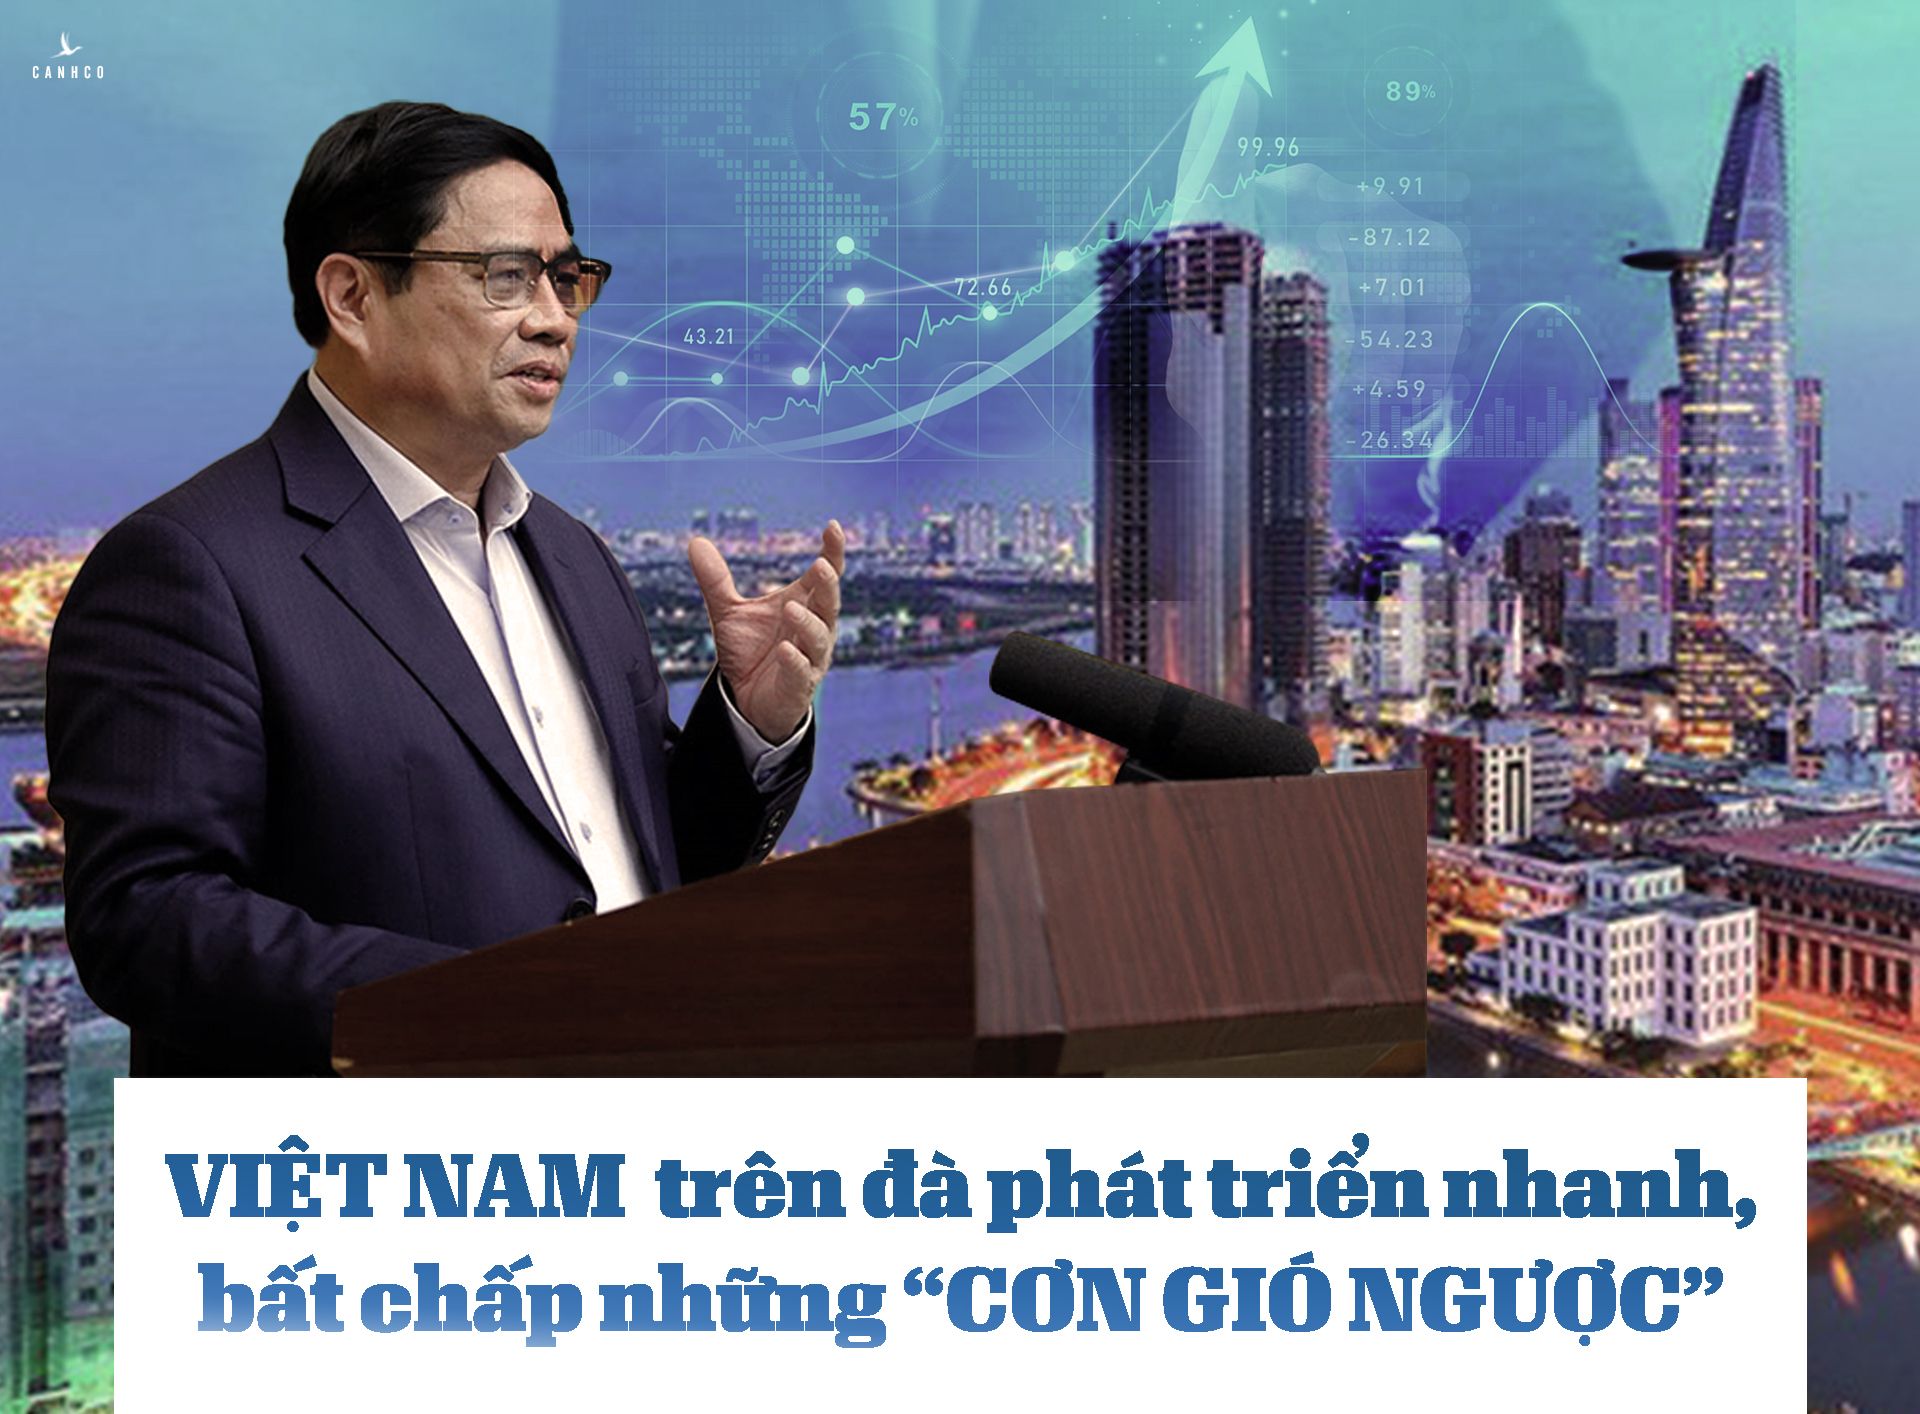 Việt Nam trên đà phát triển nhanh, bất chấp những “cơn gió ngược”